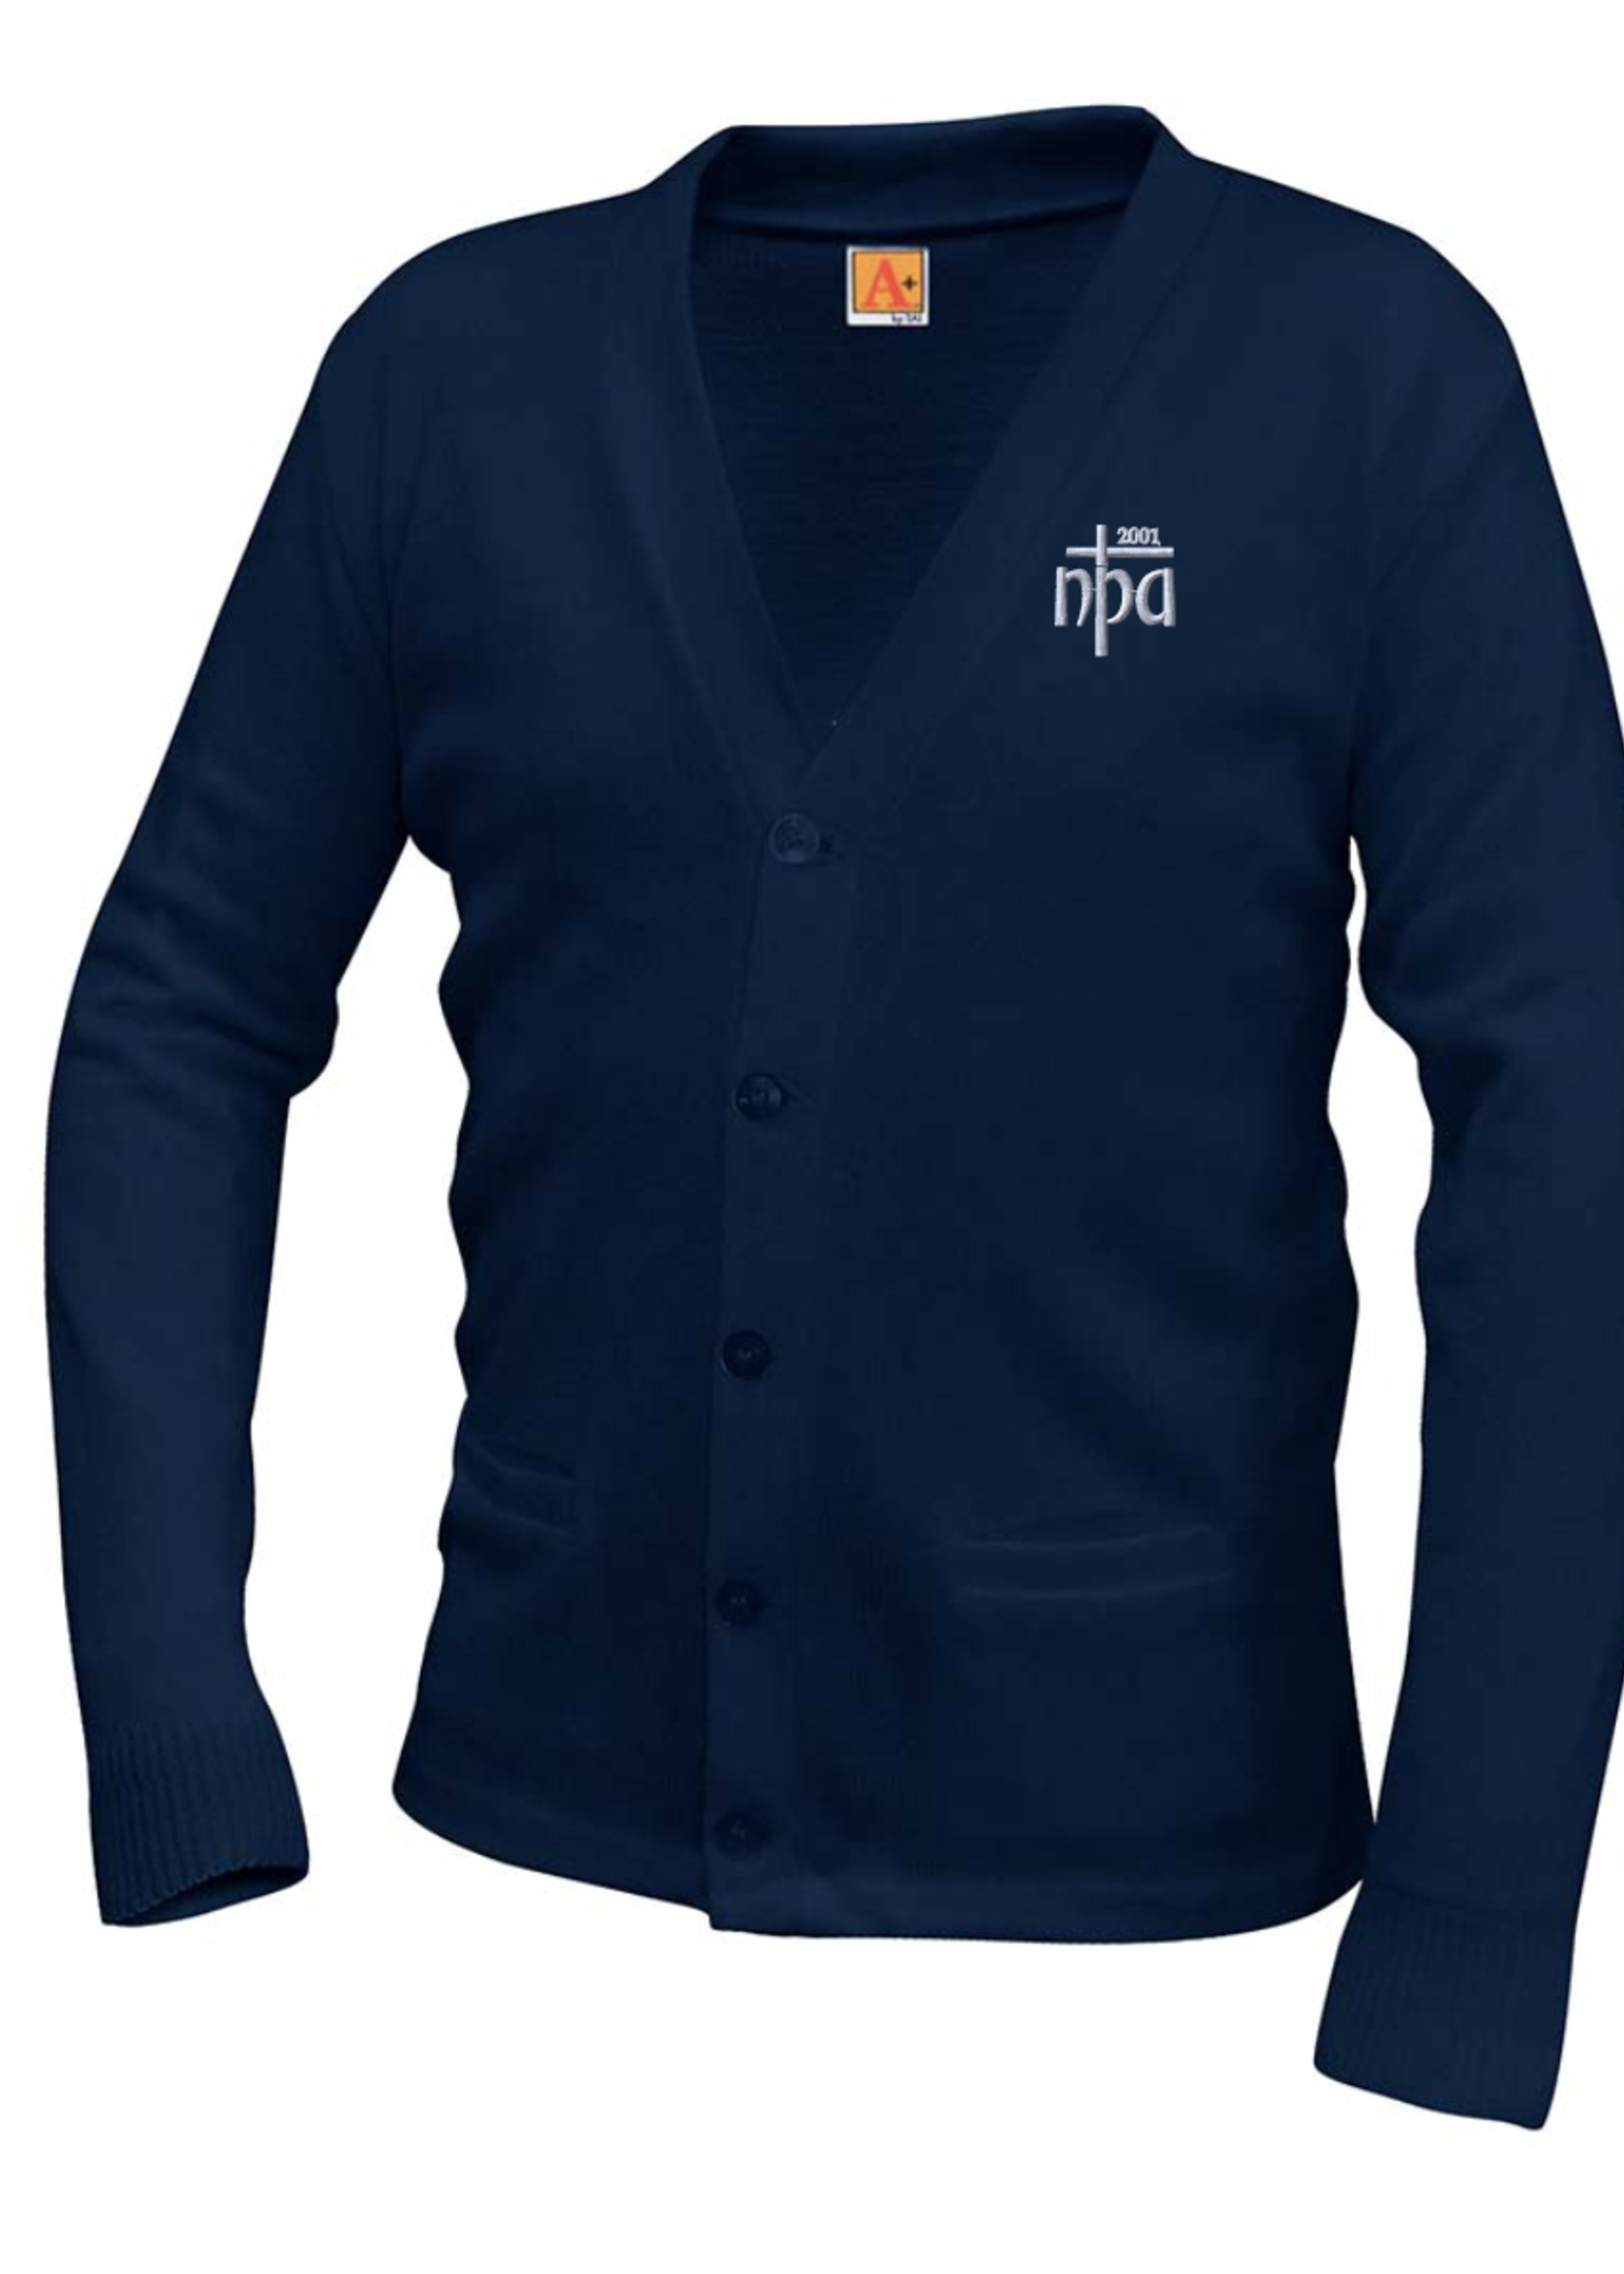 NPA Navy V-neck cardigan sweater with pockets